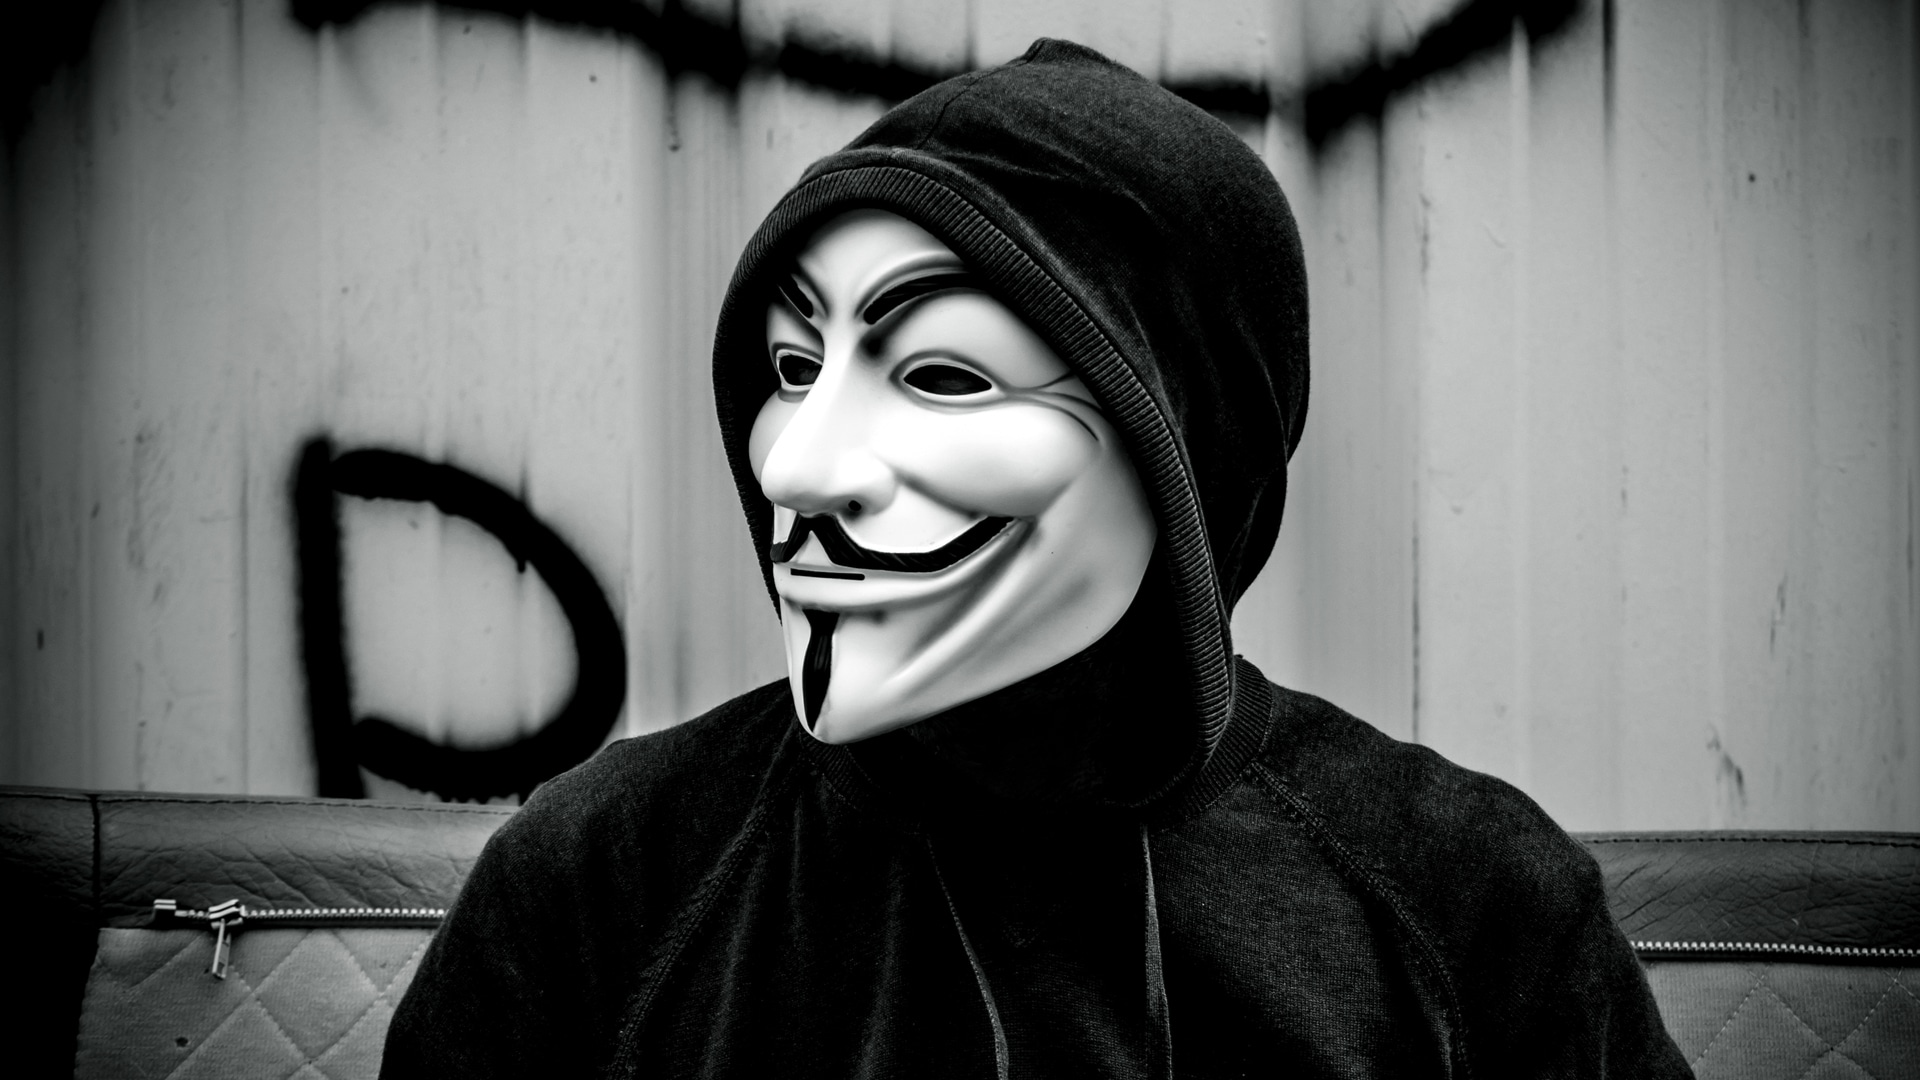 Pessoa com máscara do Anonymous